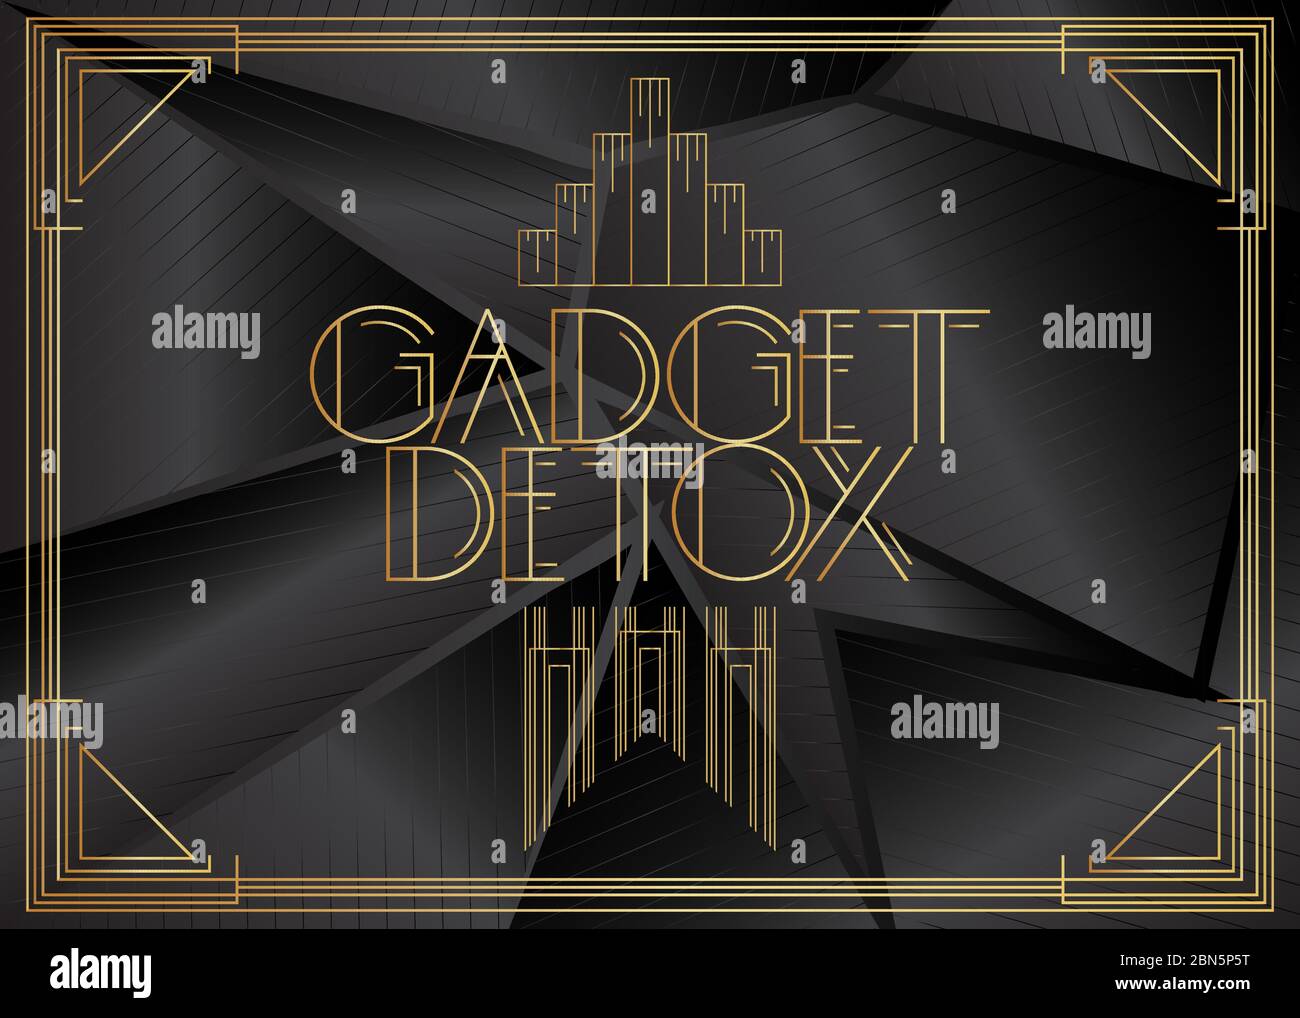 Testo Art Deco Gadget Detox. Biglietto di auguri decorativo, cartello con lettere d'epoca. Illustrazione Vettoriale